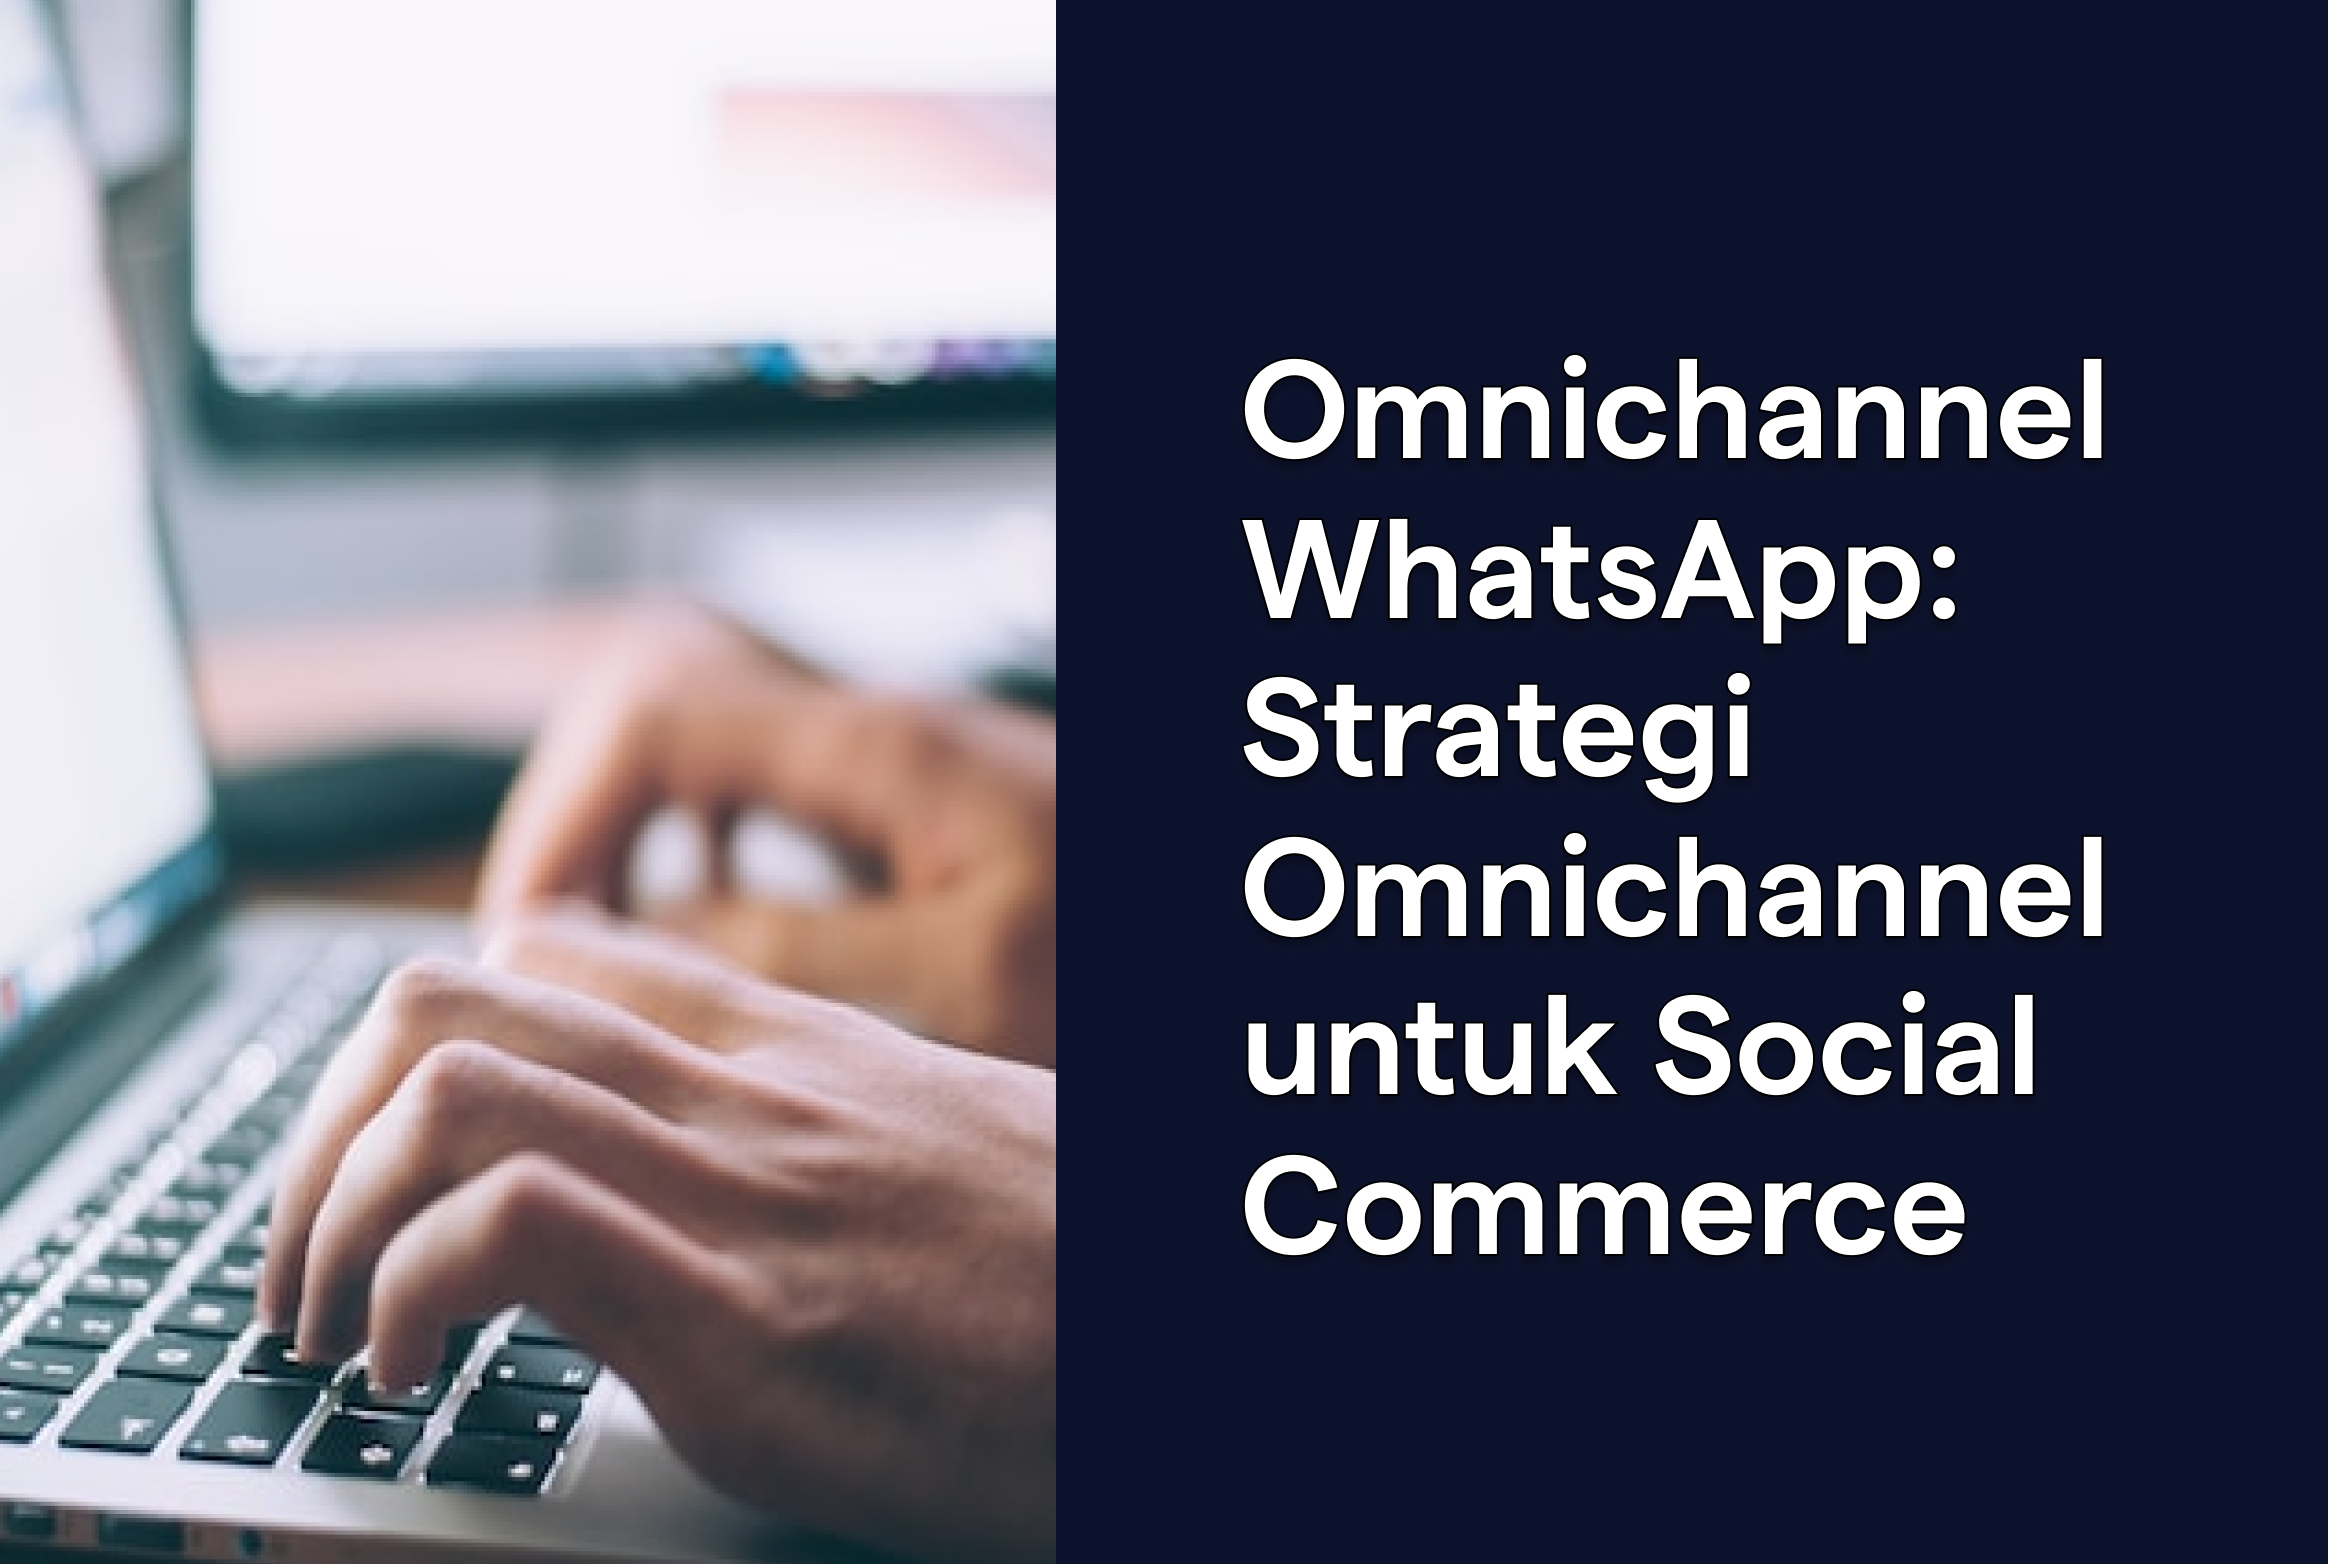 Strategi Omnichannel WhatsApp